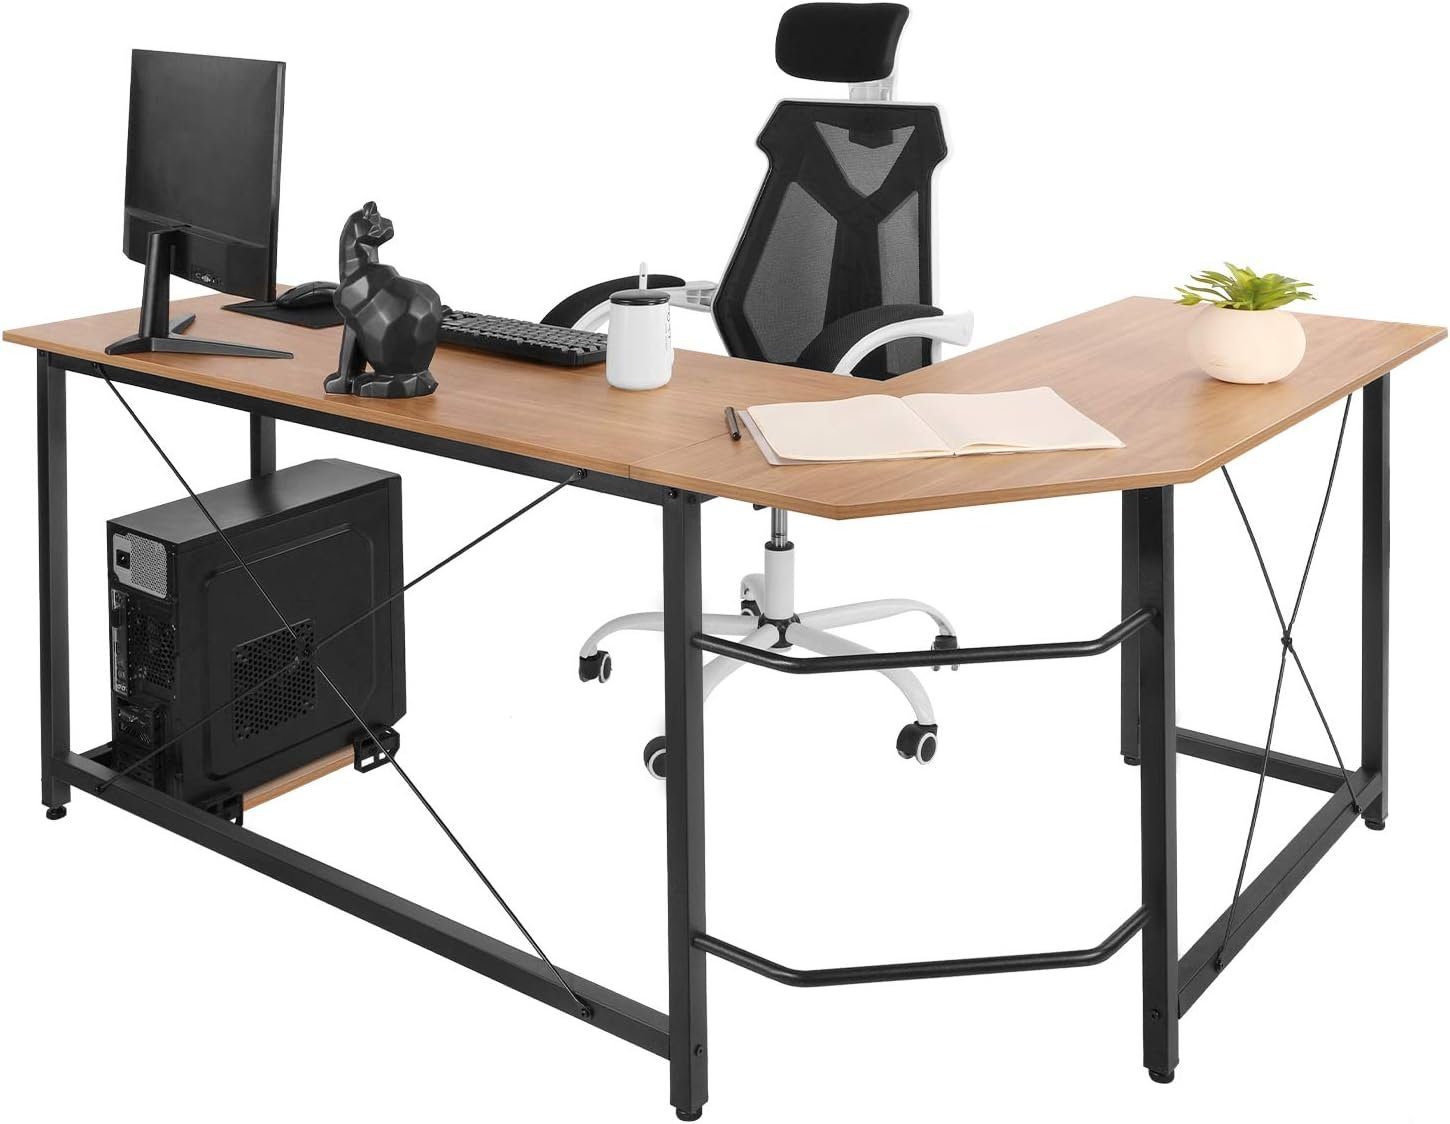 TLGREEN Eckschreibtisch L-förmiger Schreibtisch, 167 cm Gaming Tisch, L-Form Computertisch, 167 cm Eckschreibtisch für Büro, Breite 120cm